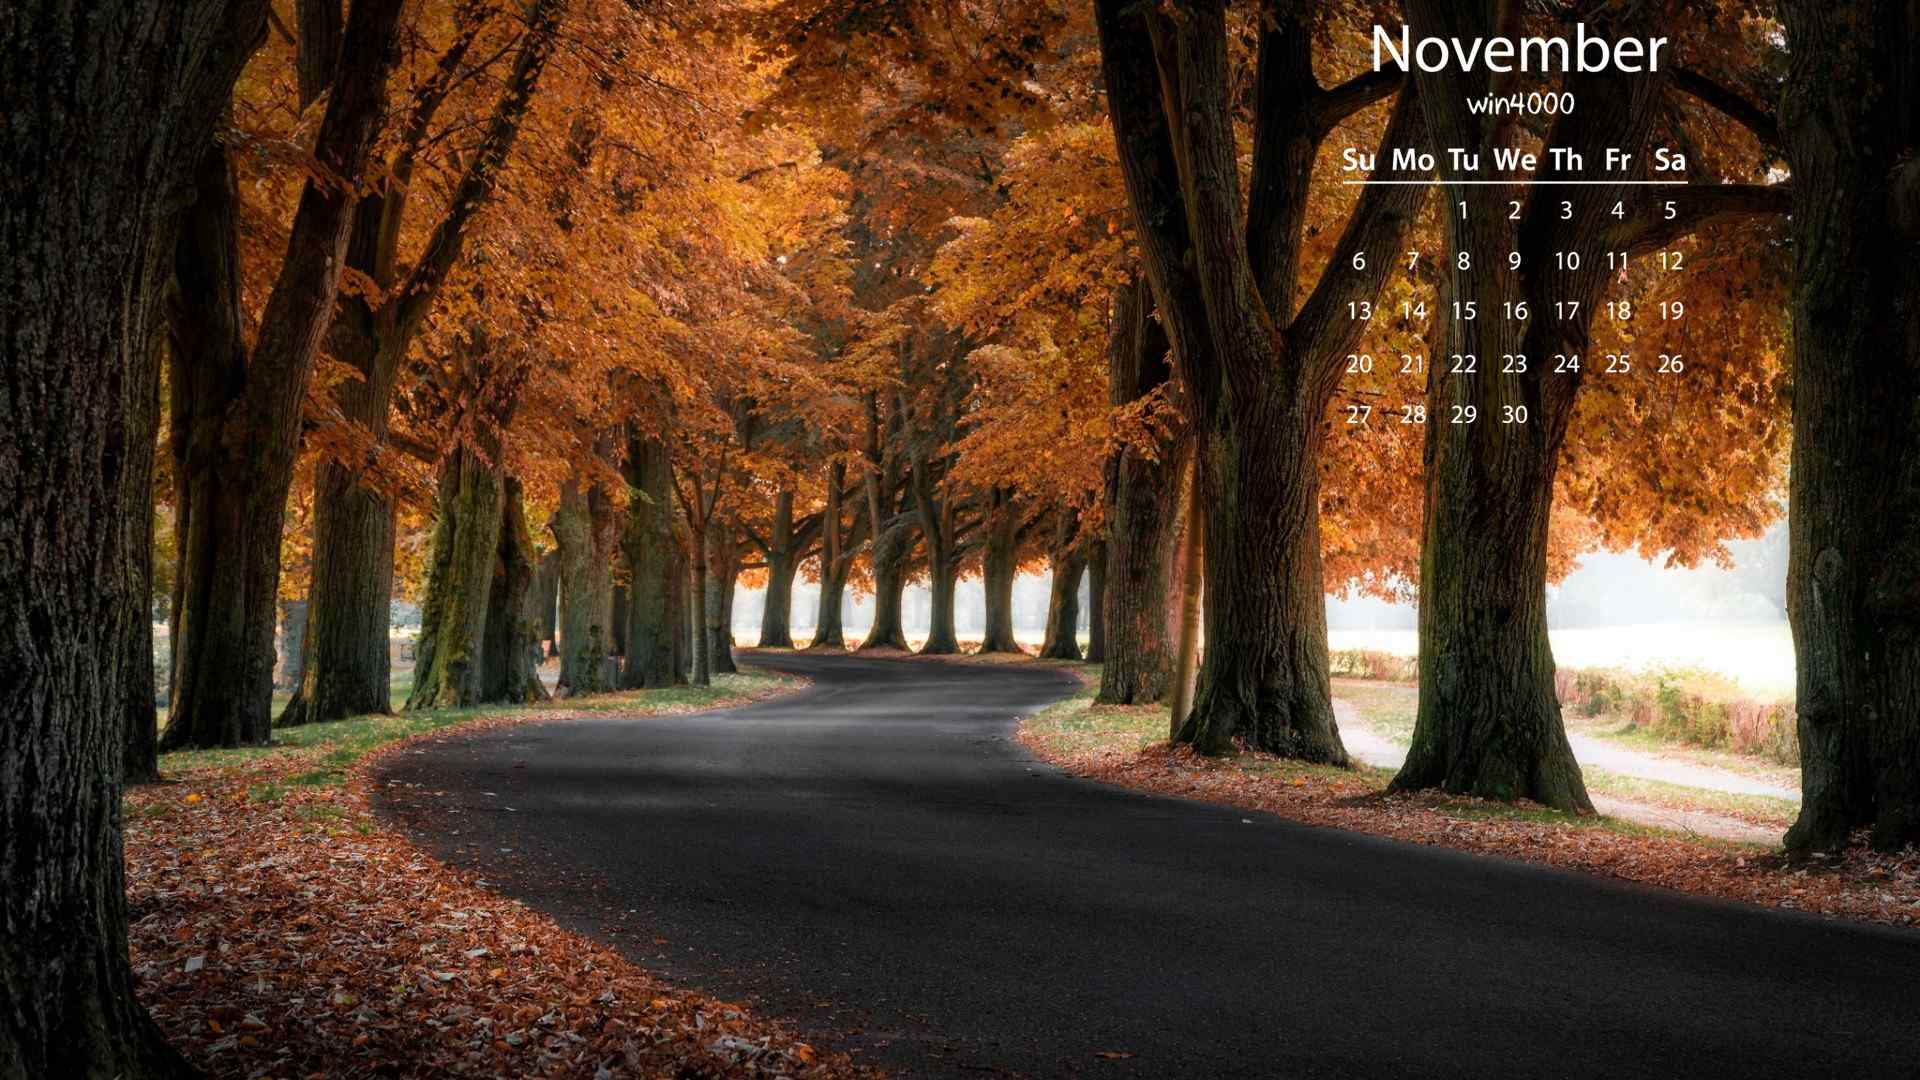 2016年11月日历秋天的红色枫叶高清风景图片壁纸下载